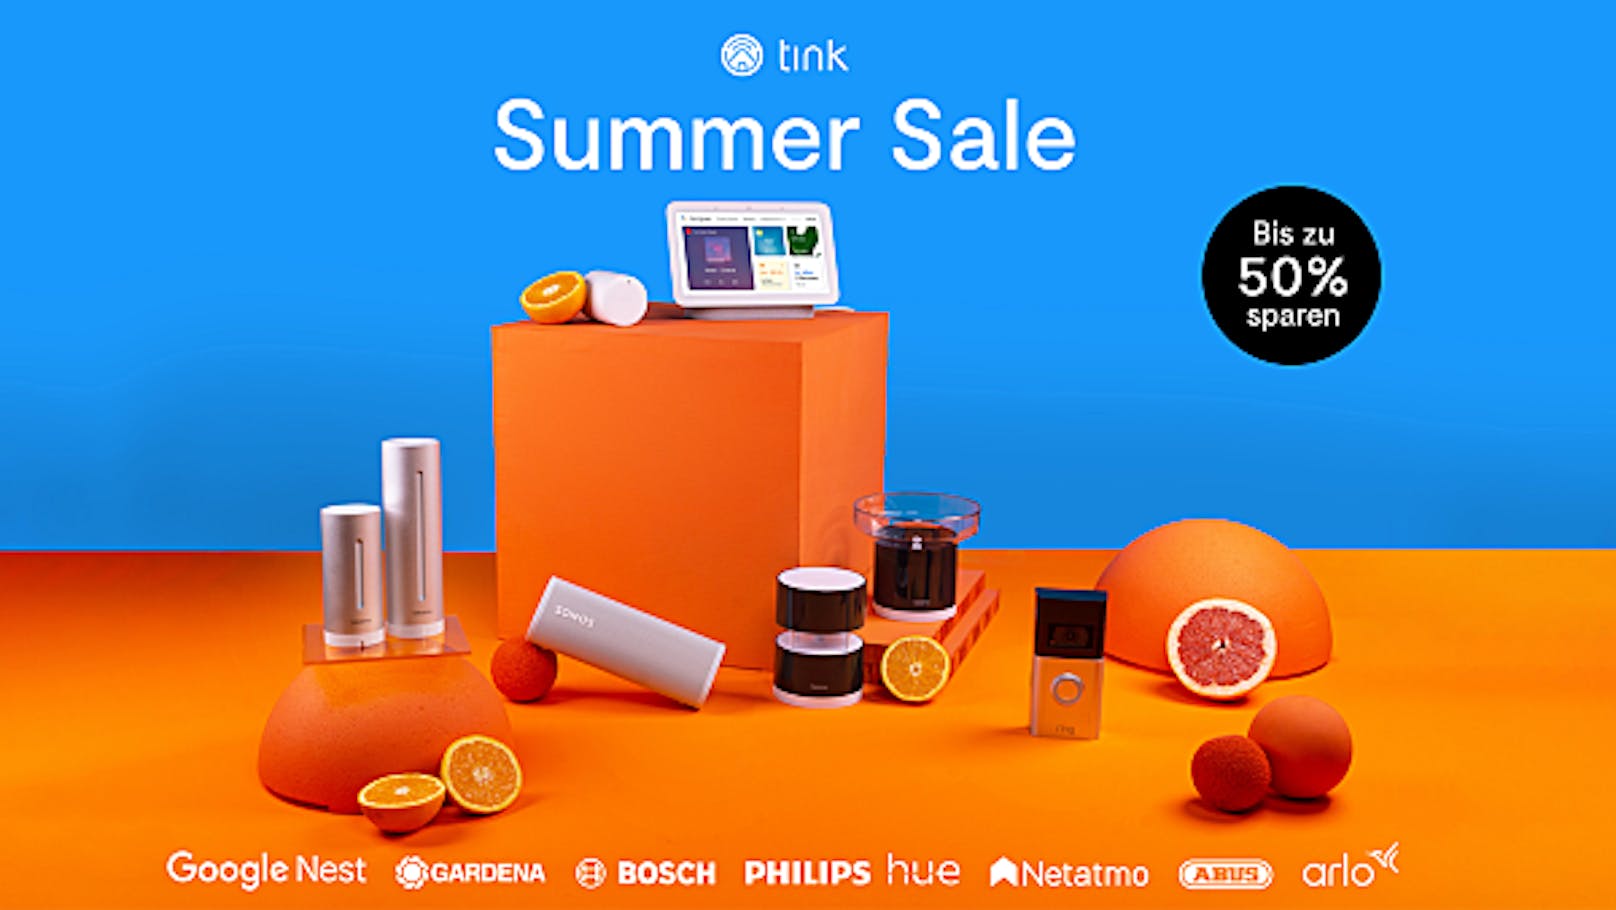 Heiße Preise: Bis zu 50 Prozent sparen beim tink Summer Sale.